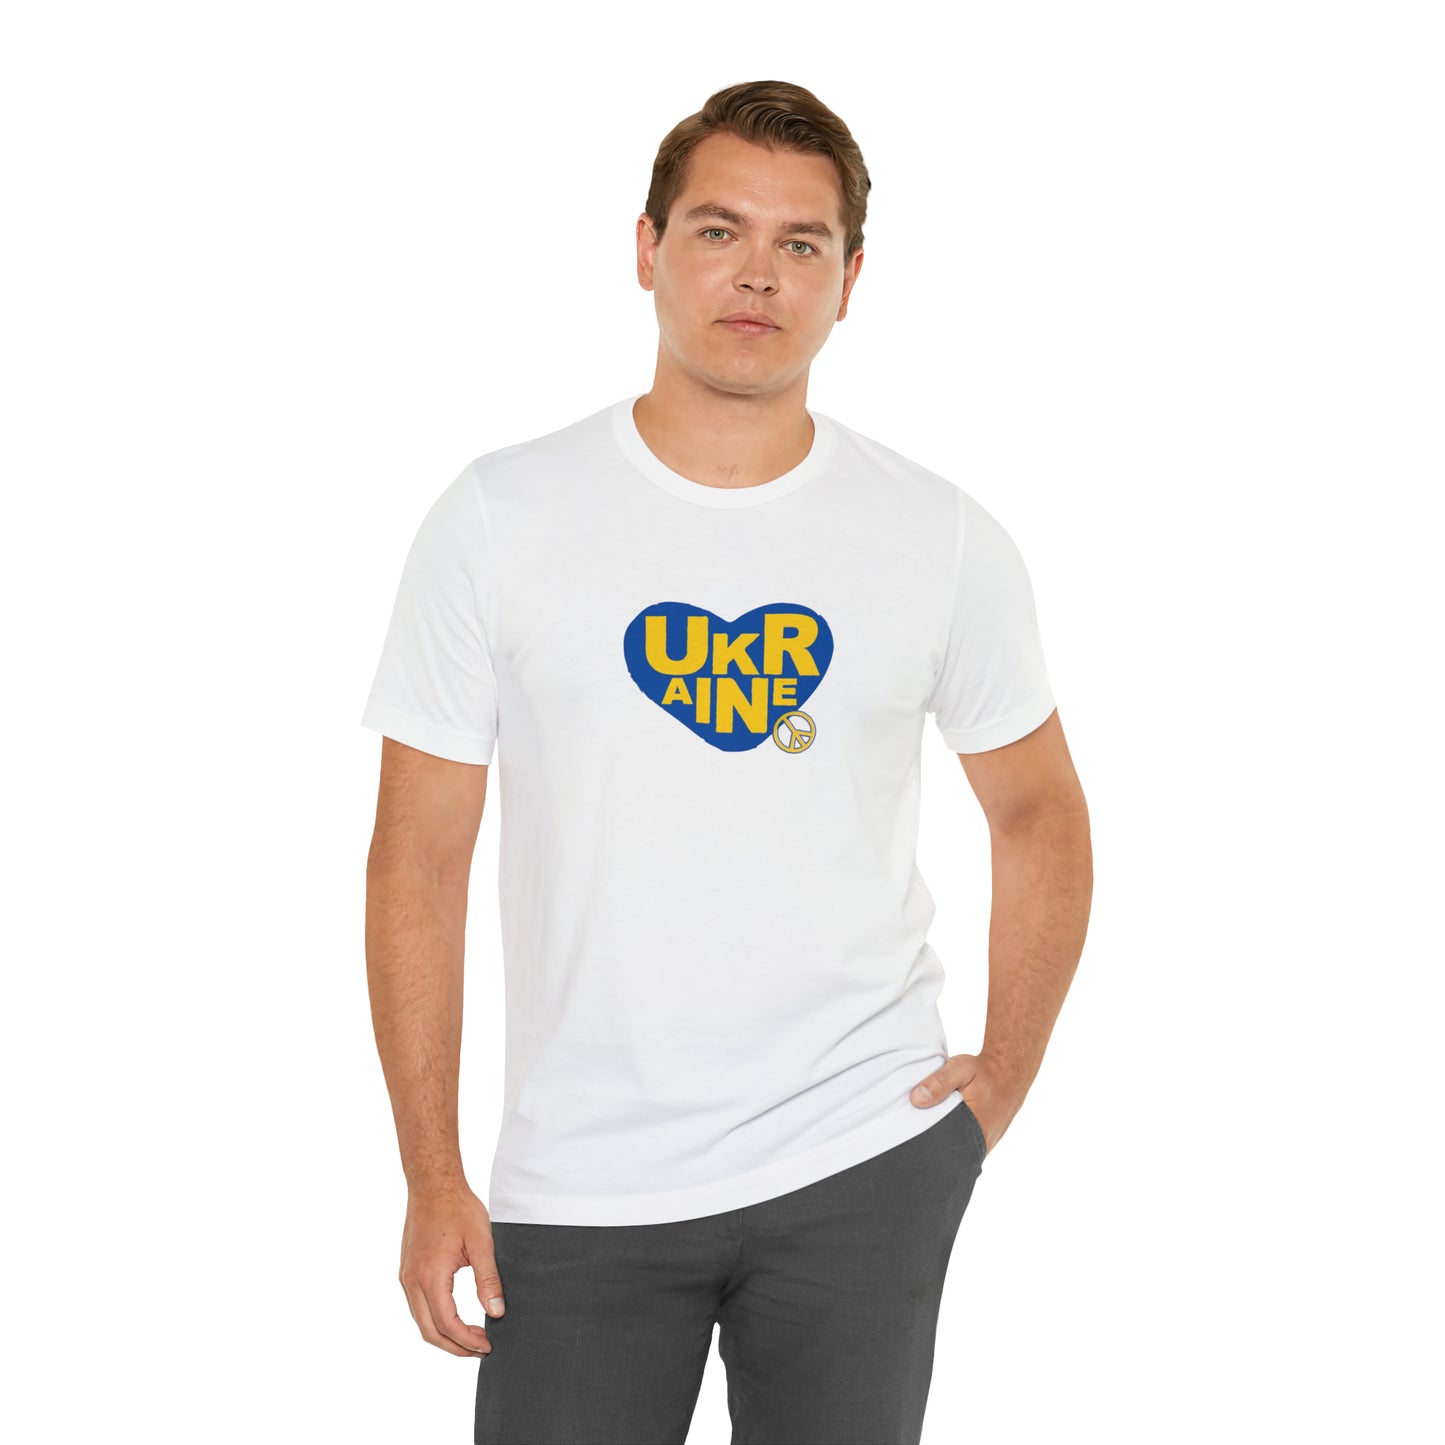 UKR Peace Unisex T-Shirt